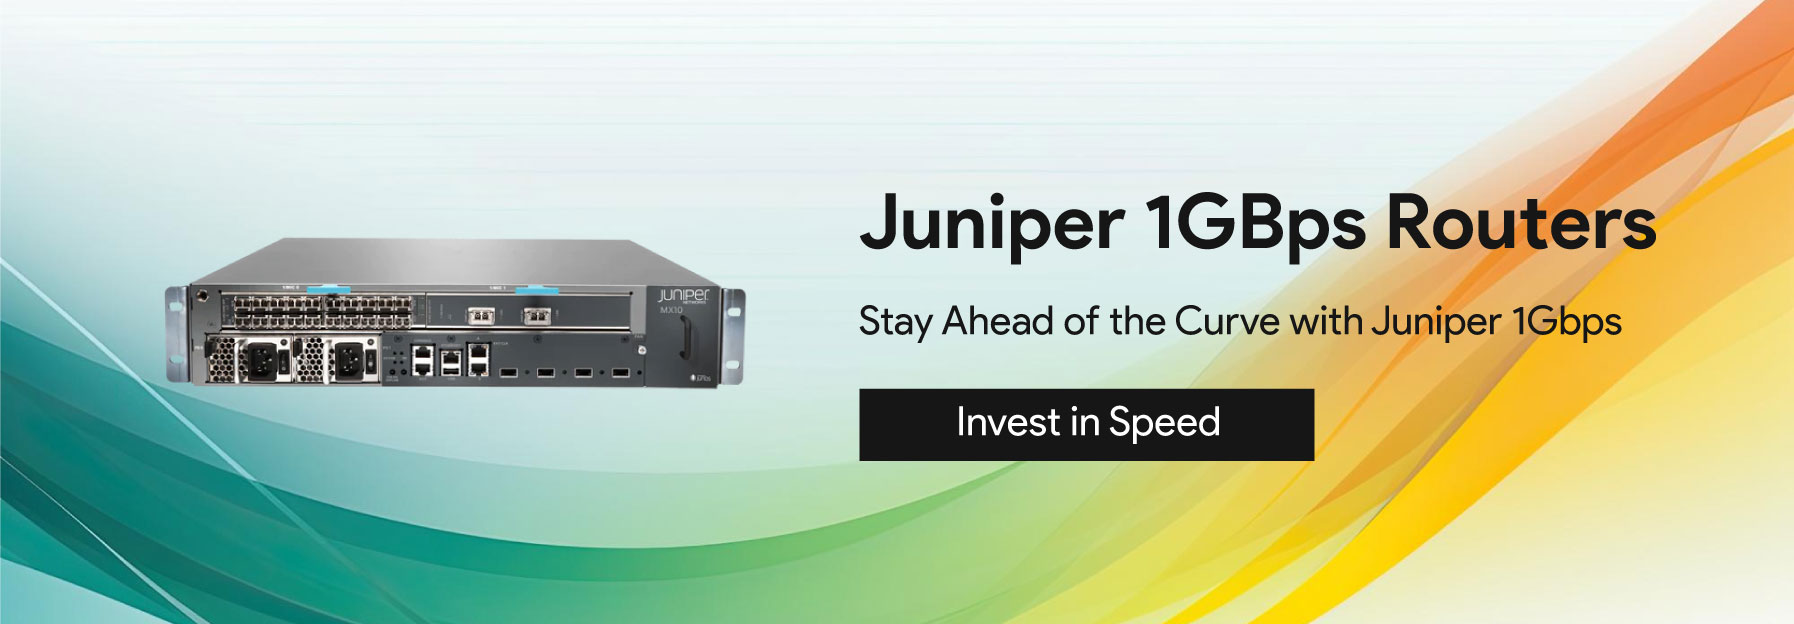 Juniper-1Gbps